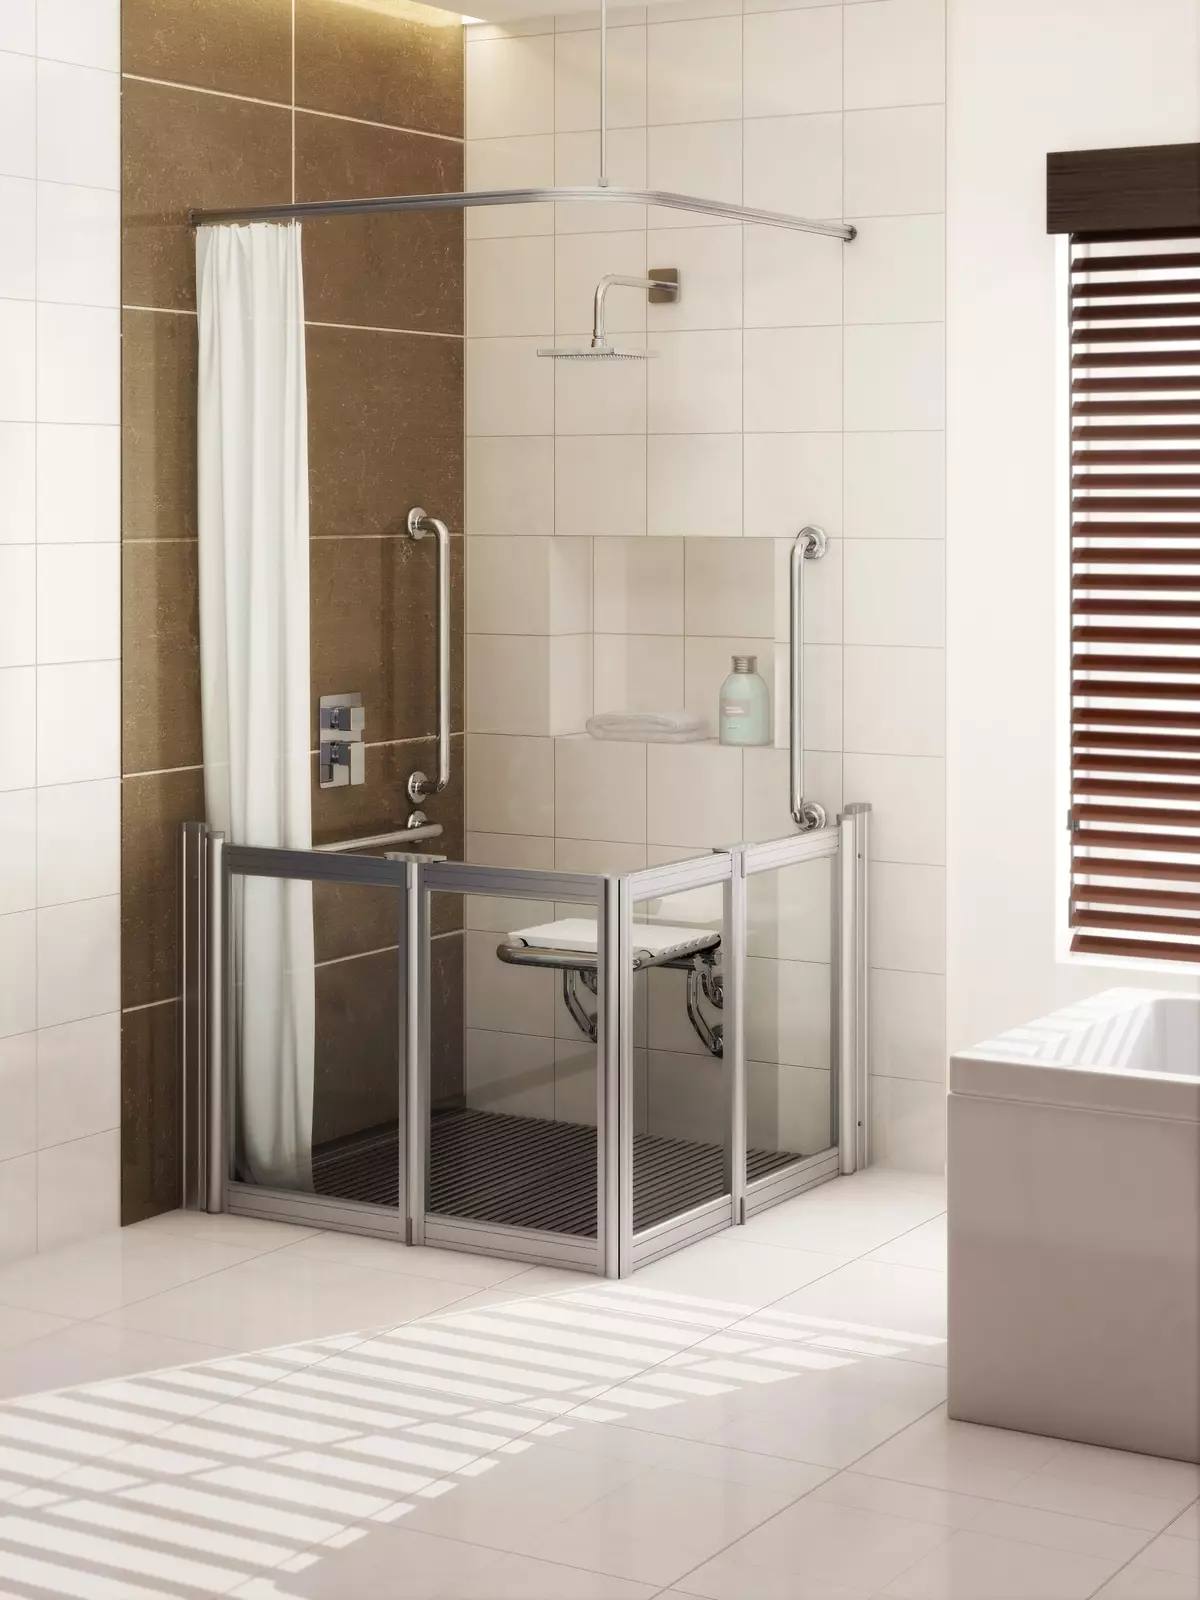 Suihku kylpyhuone ilman mökkiä (86 valokuvaa): Kylpyhuoneen suunnitteluvaihtoehdot suihkulla ilman kuormalavaa ja laattakaapit, projektit 21384_23